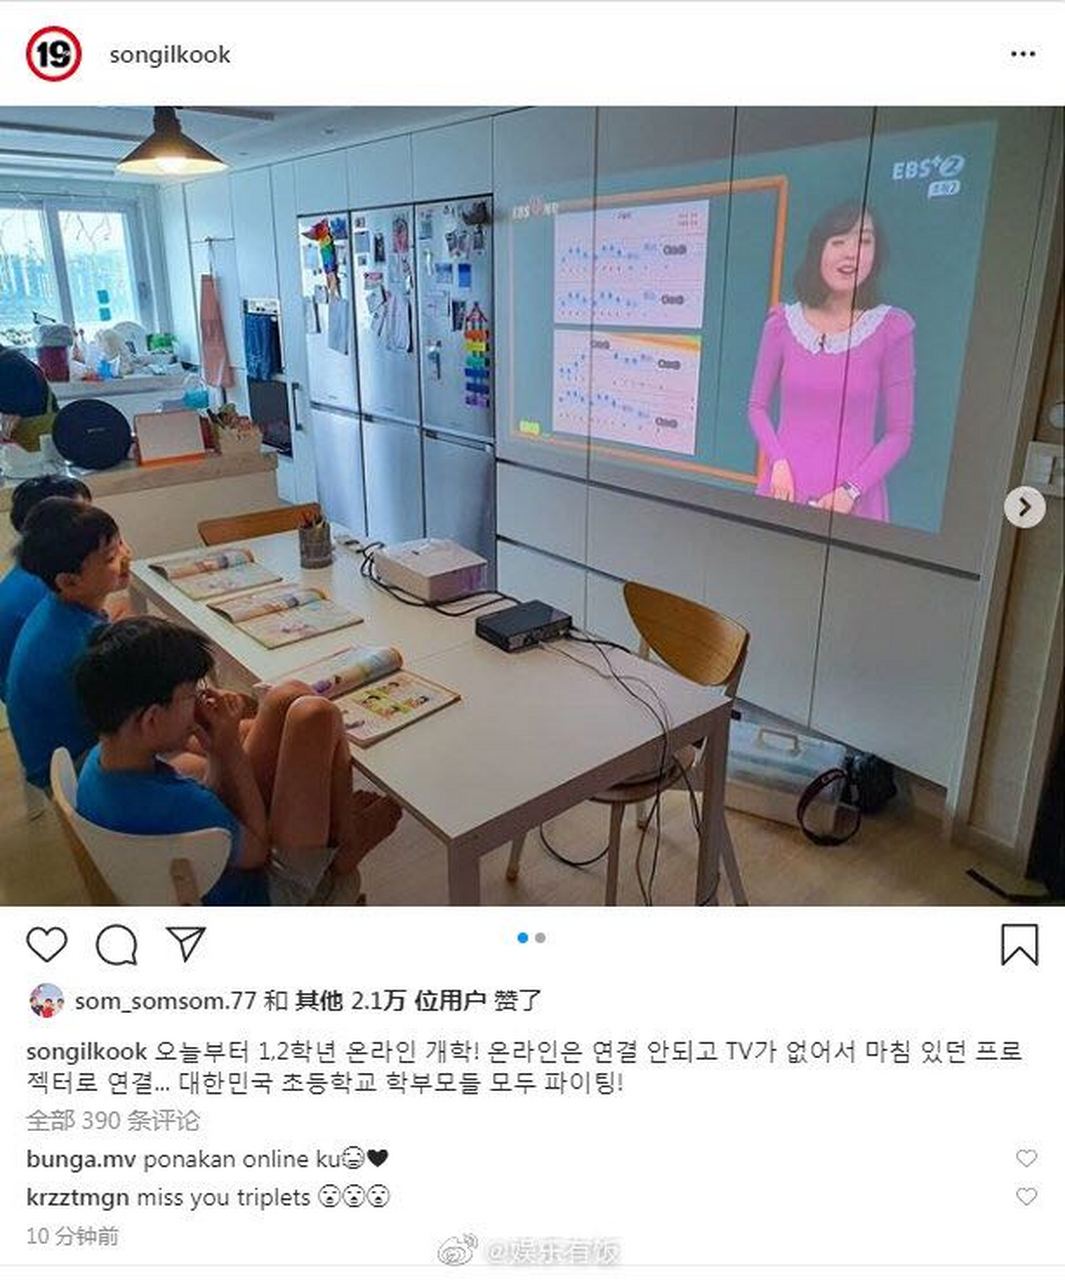 4月20日,宋一国ins晒照分享了儿子们在家里的近况,大韩,民国,万岁坐一